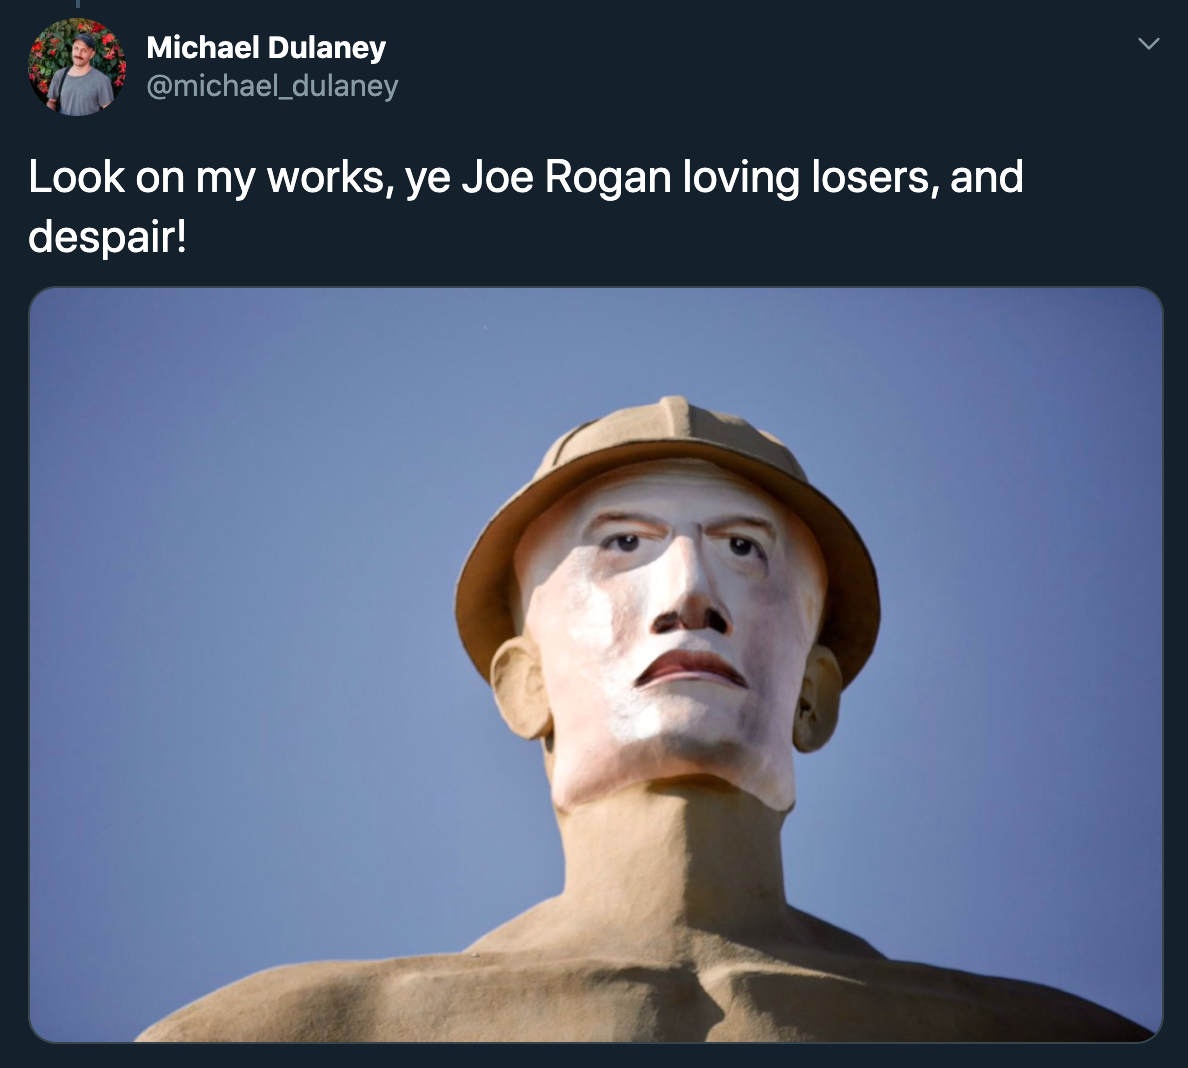 Look on my works, ye Joe Rogan loving losers, and despair!